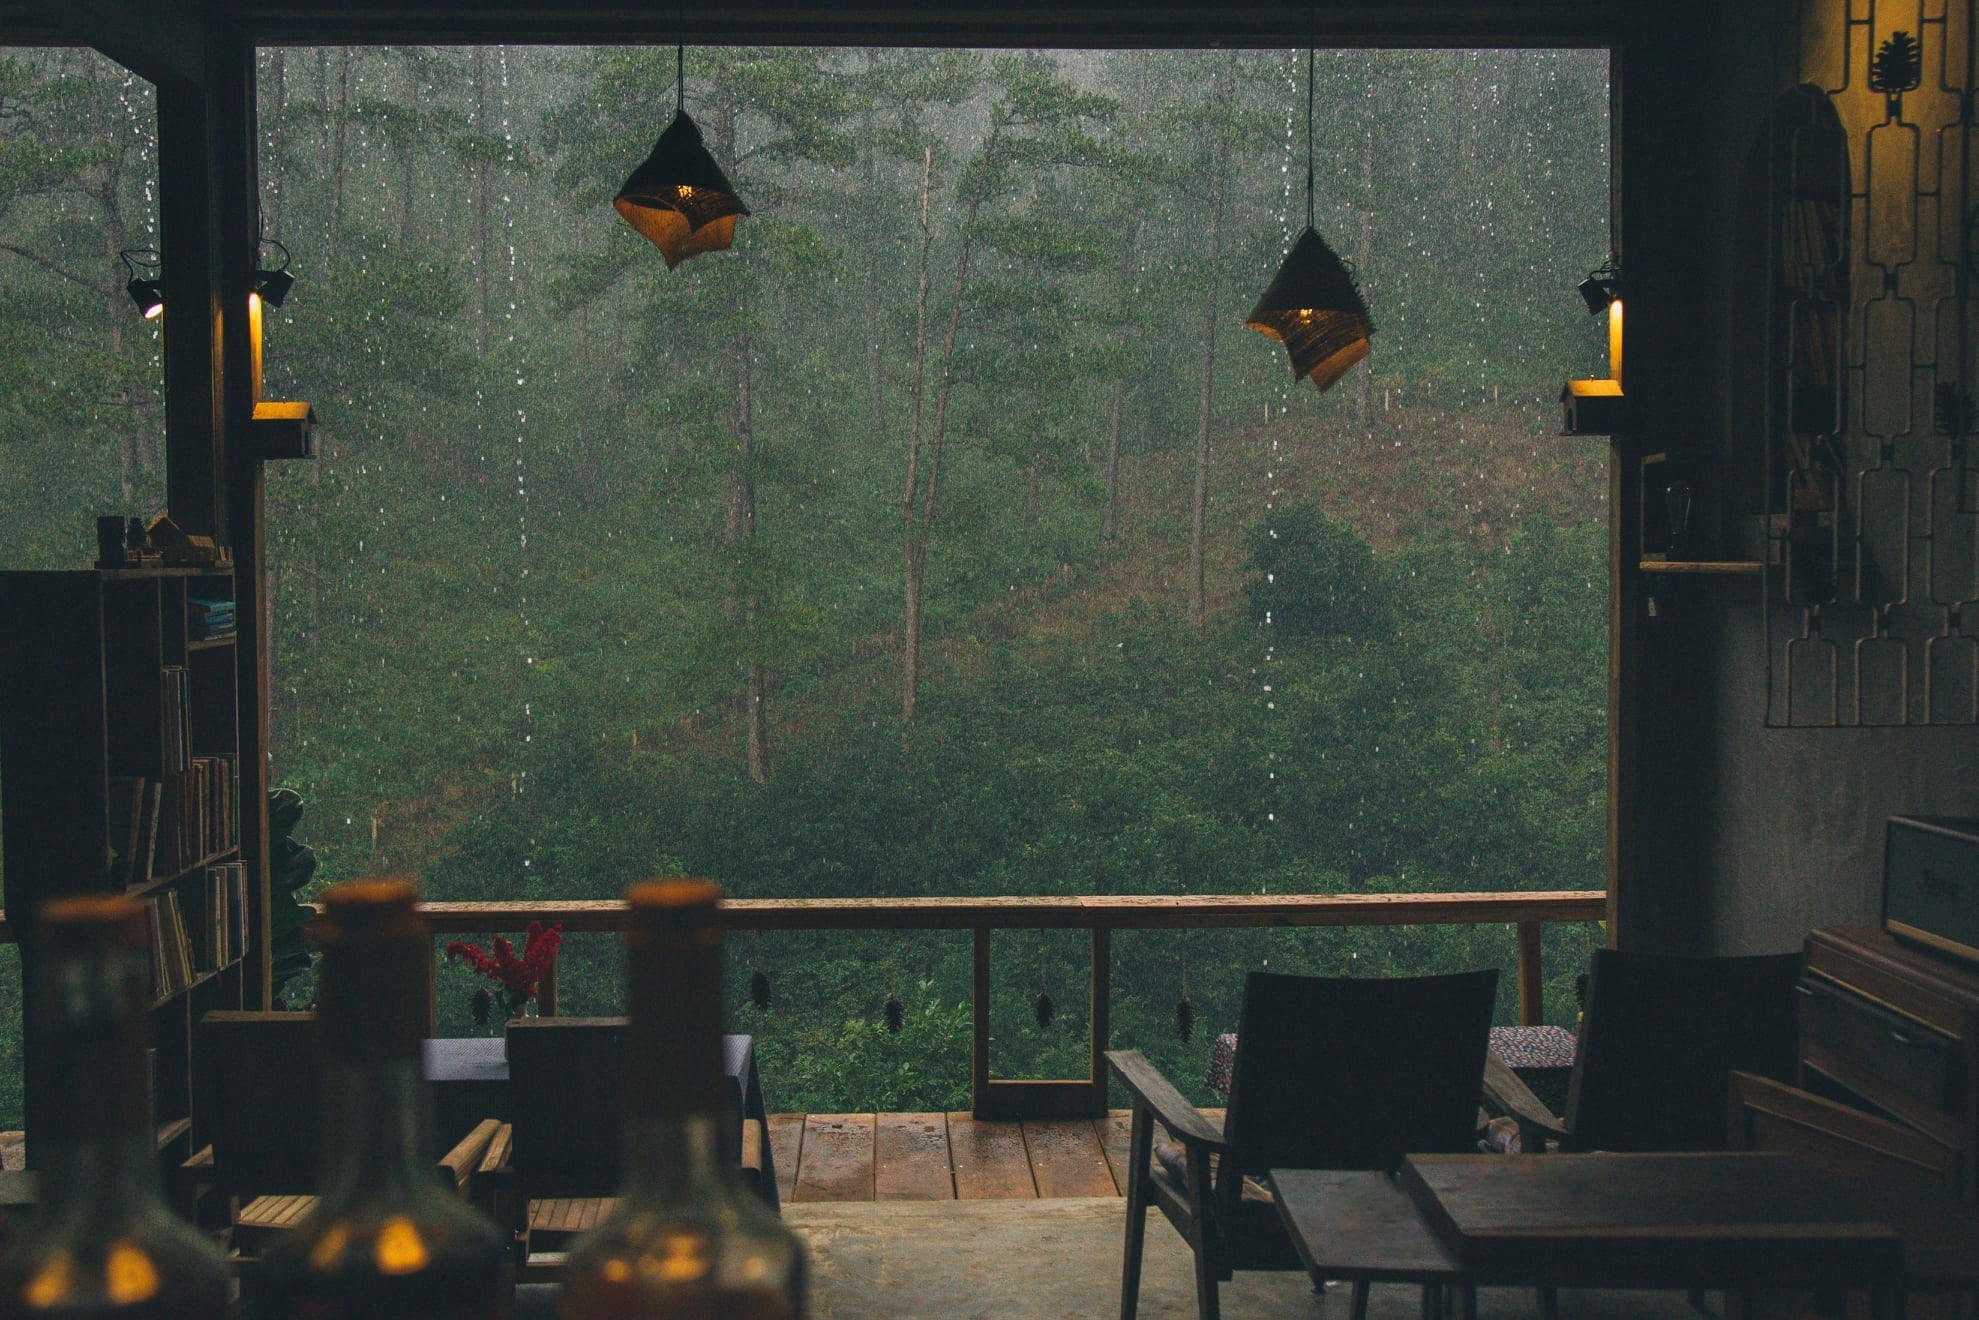 Ngày mưa Đà Lạt nên làm gì? Gợi ý các hoạt động cho bạn khi thăm phố núi mùa mưa.